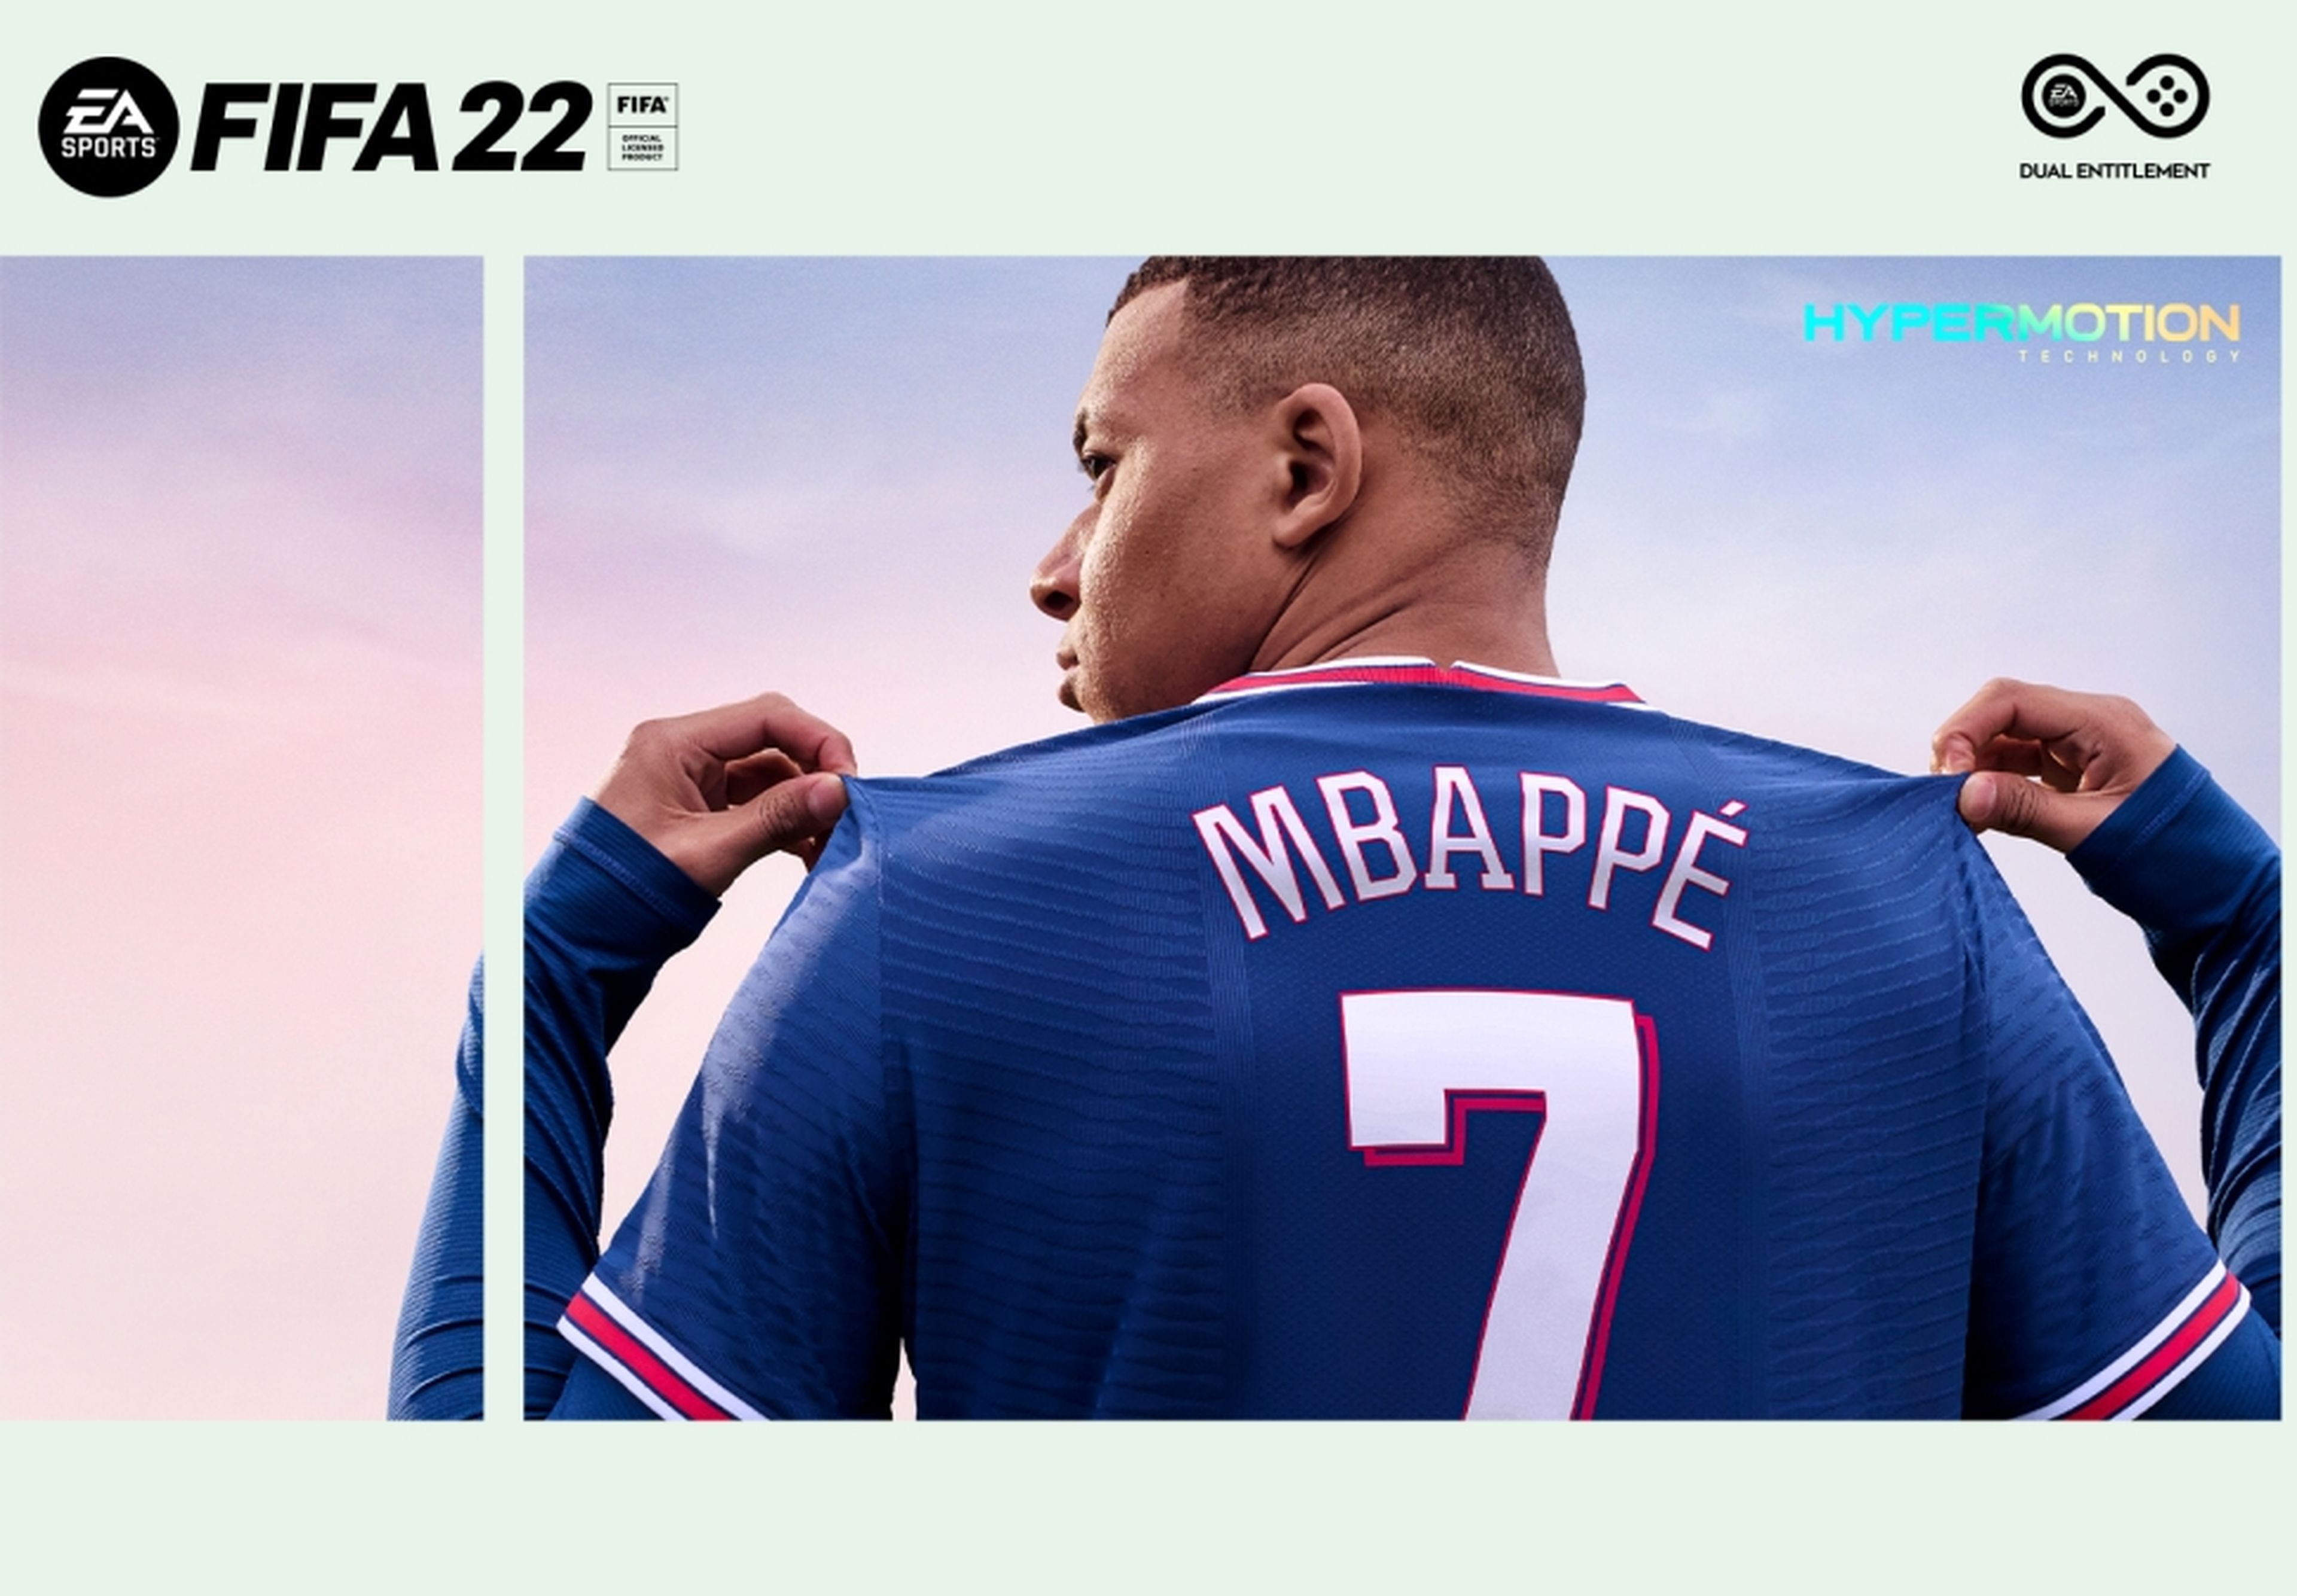 Fecha de lanzamiento y trailer de FIFA 22